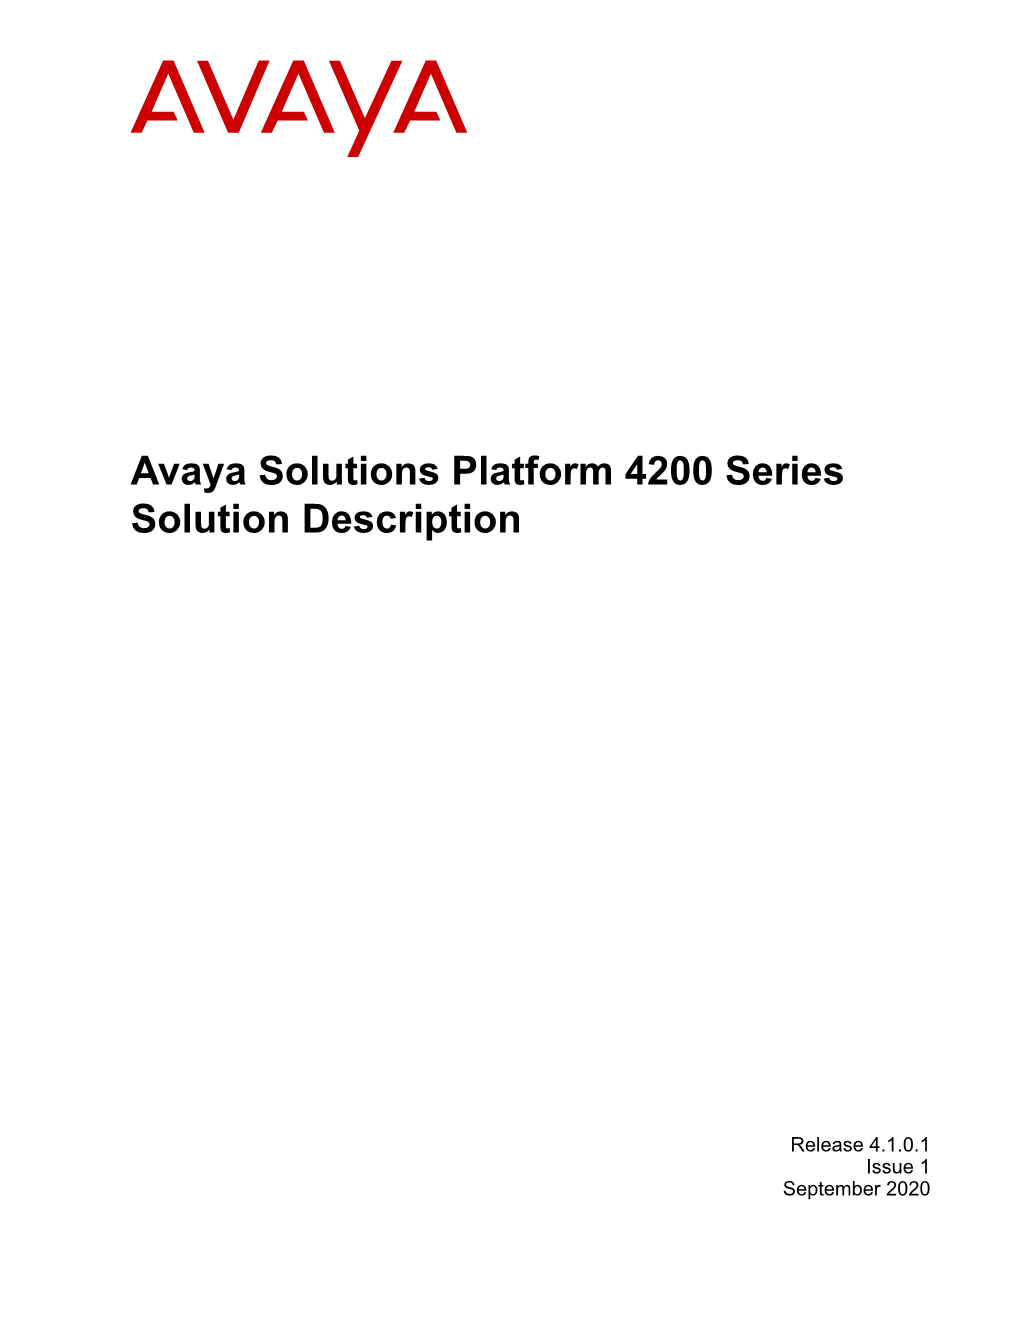 Avaya Solutions Platform 4200 Series Solution Description